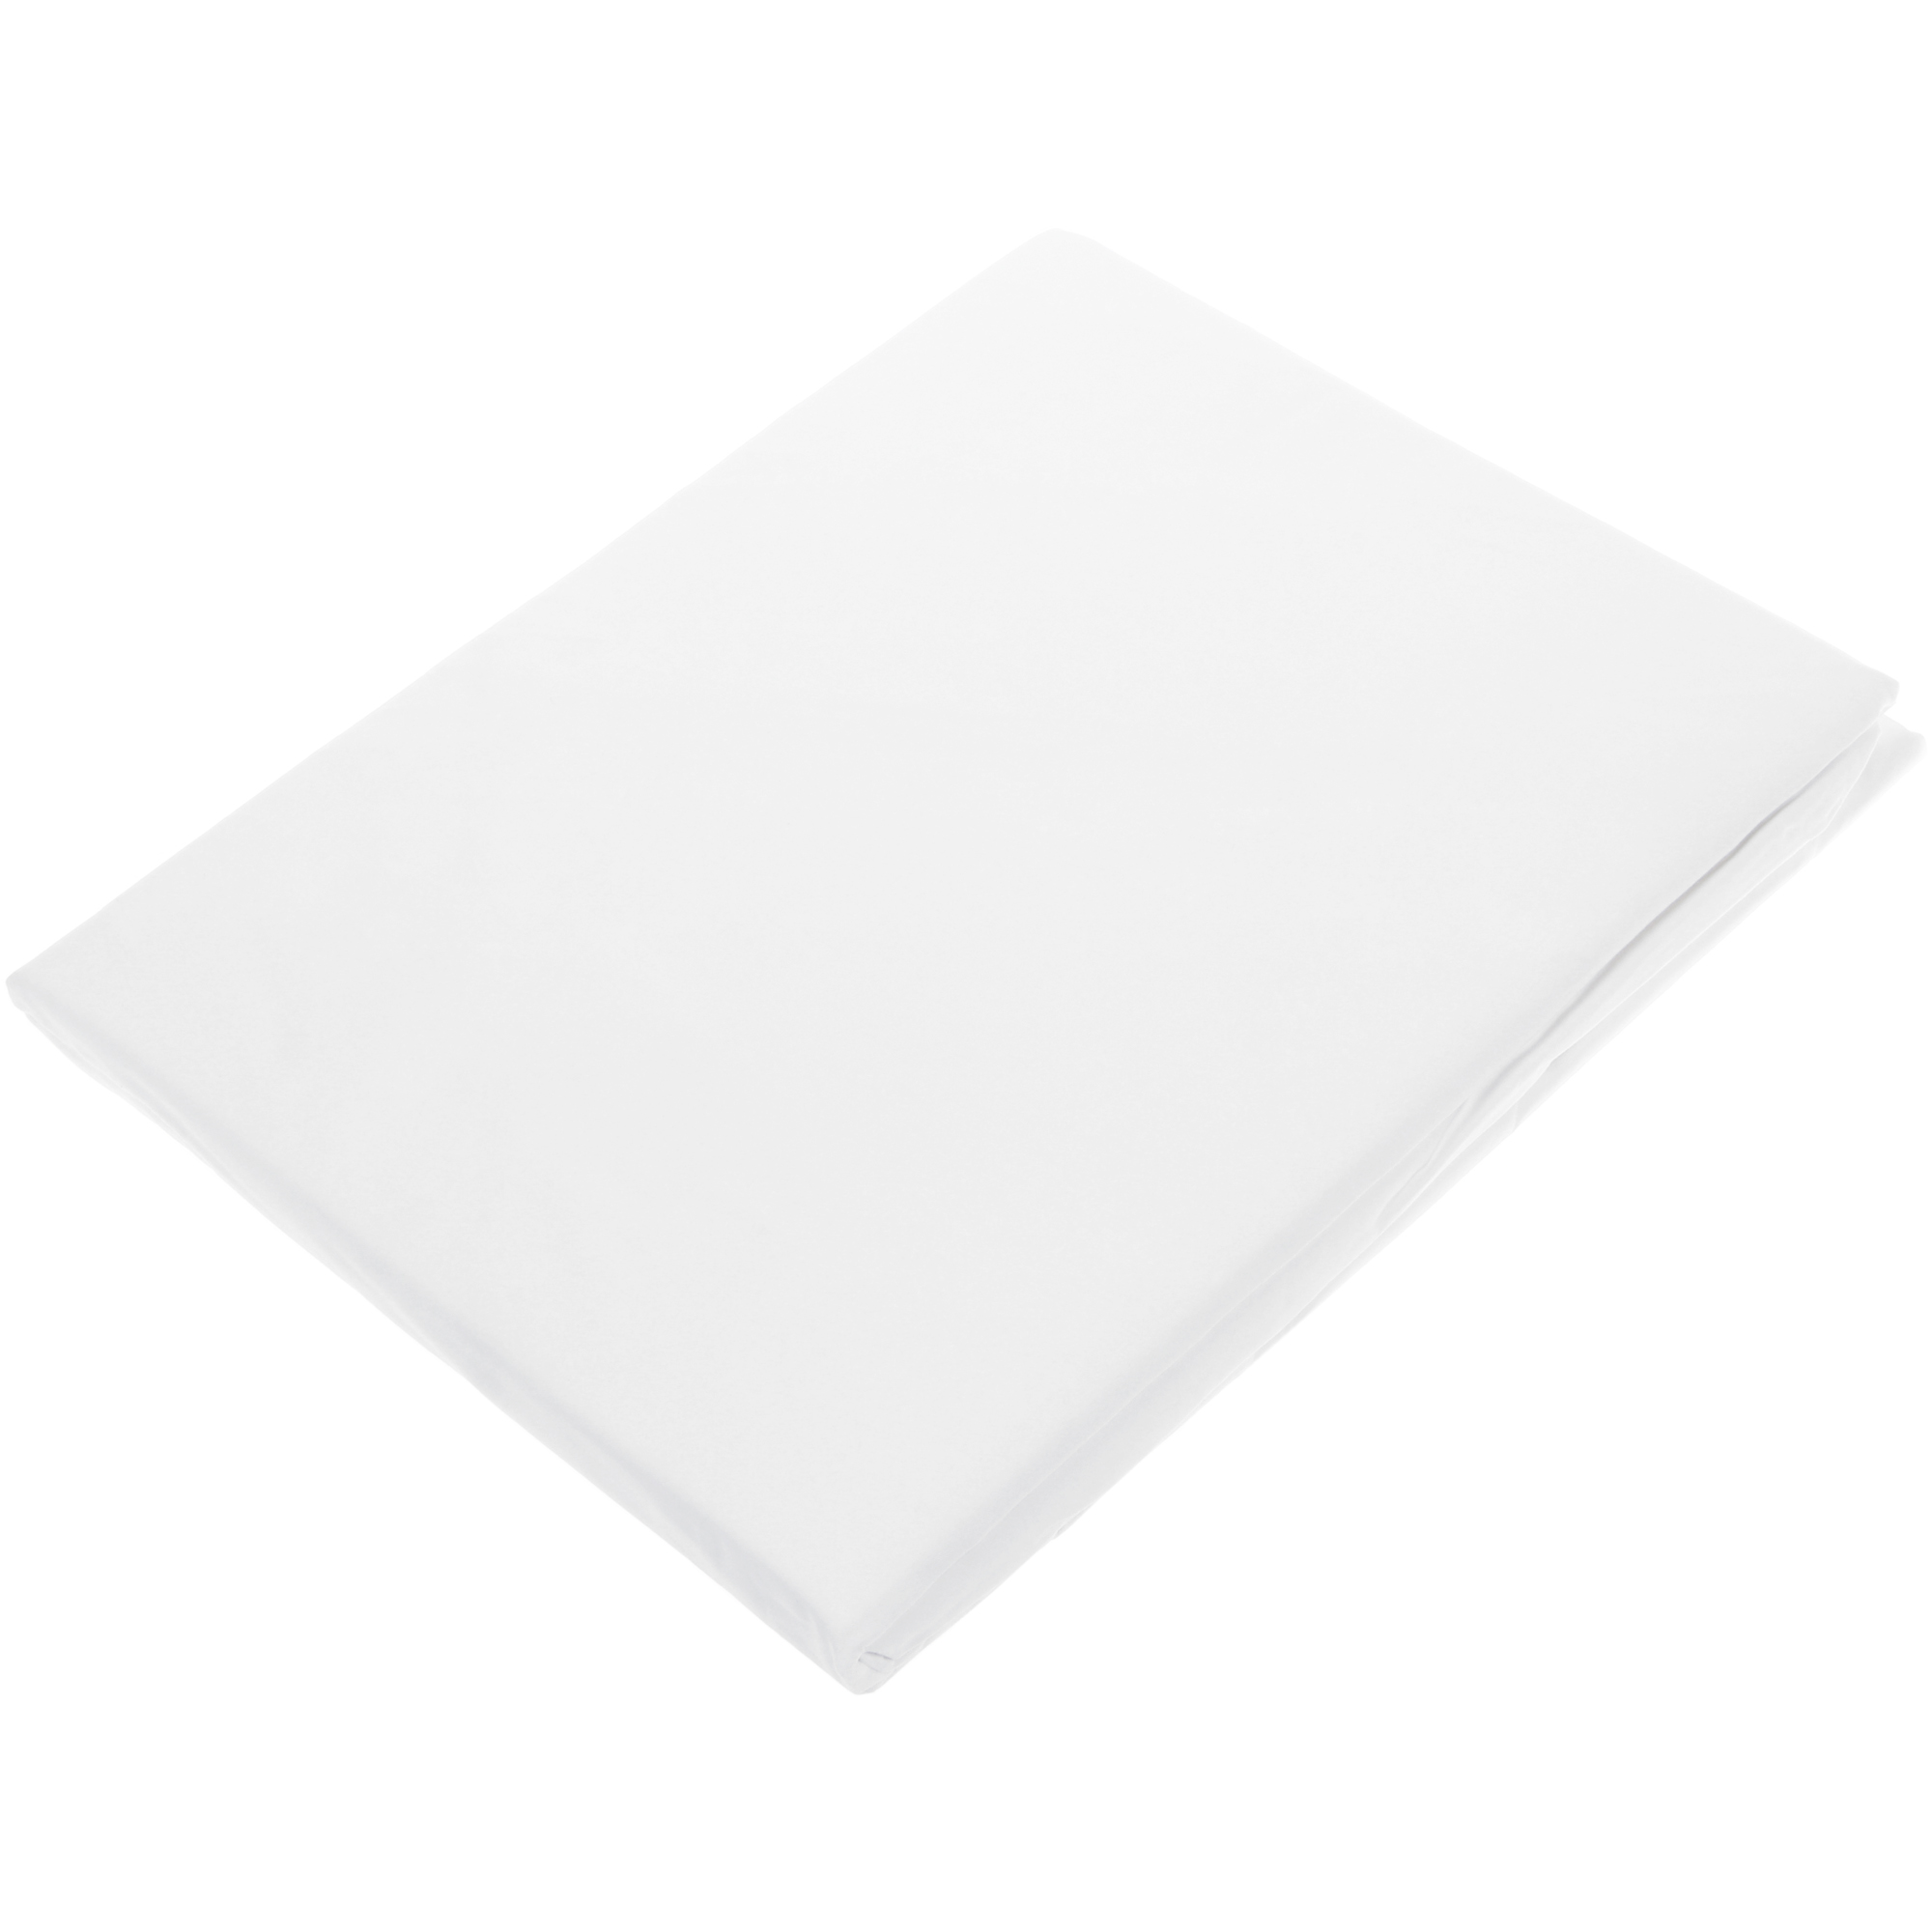 фото Простыня на резинке togas плаза белая 200х200 см